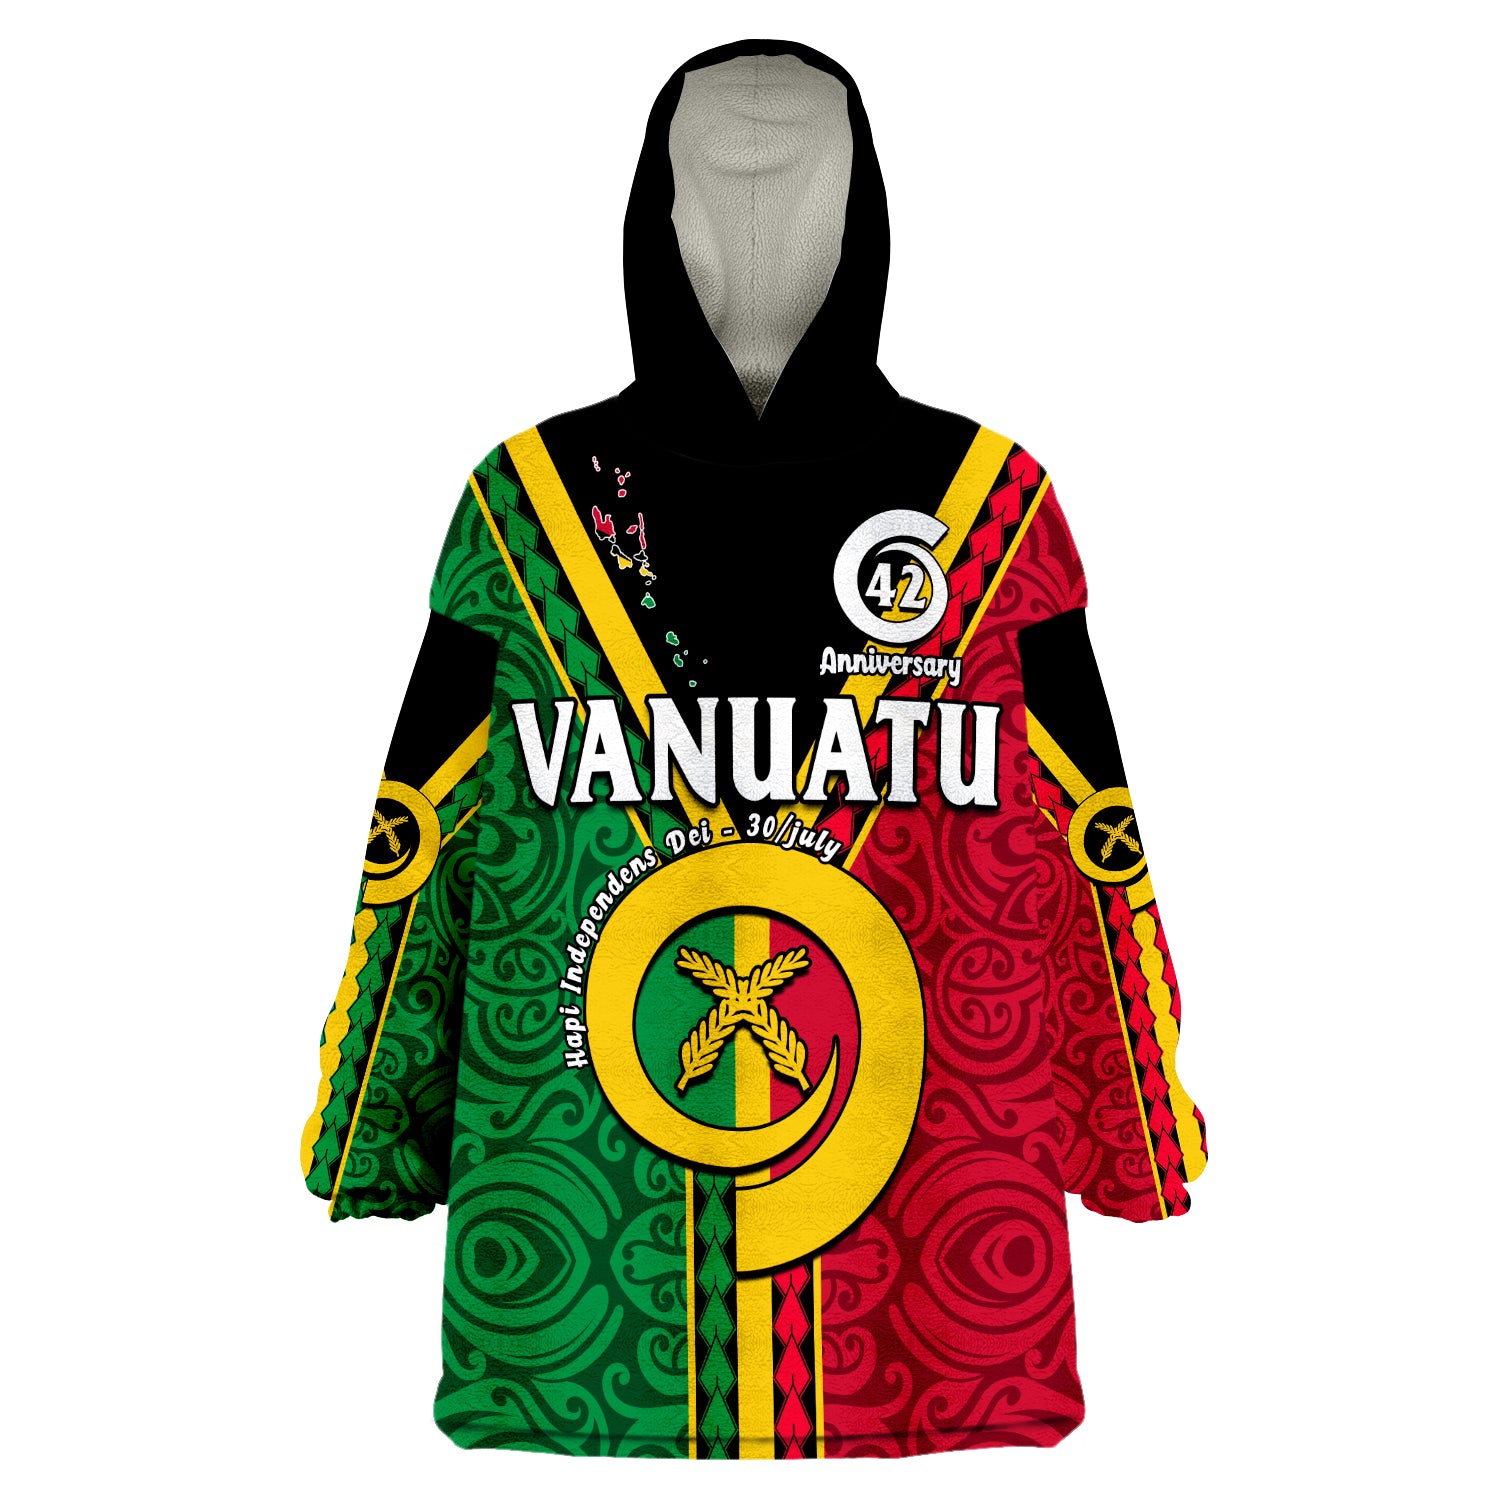 custom-personalised-vanuatu-42-years-anniversary-hapi-independens-dei-wearable-blanket-hoodie